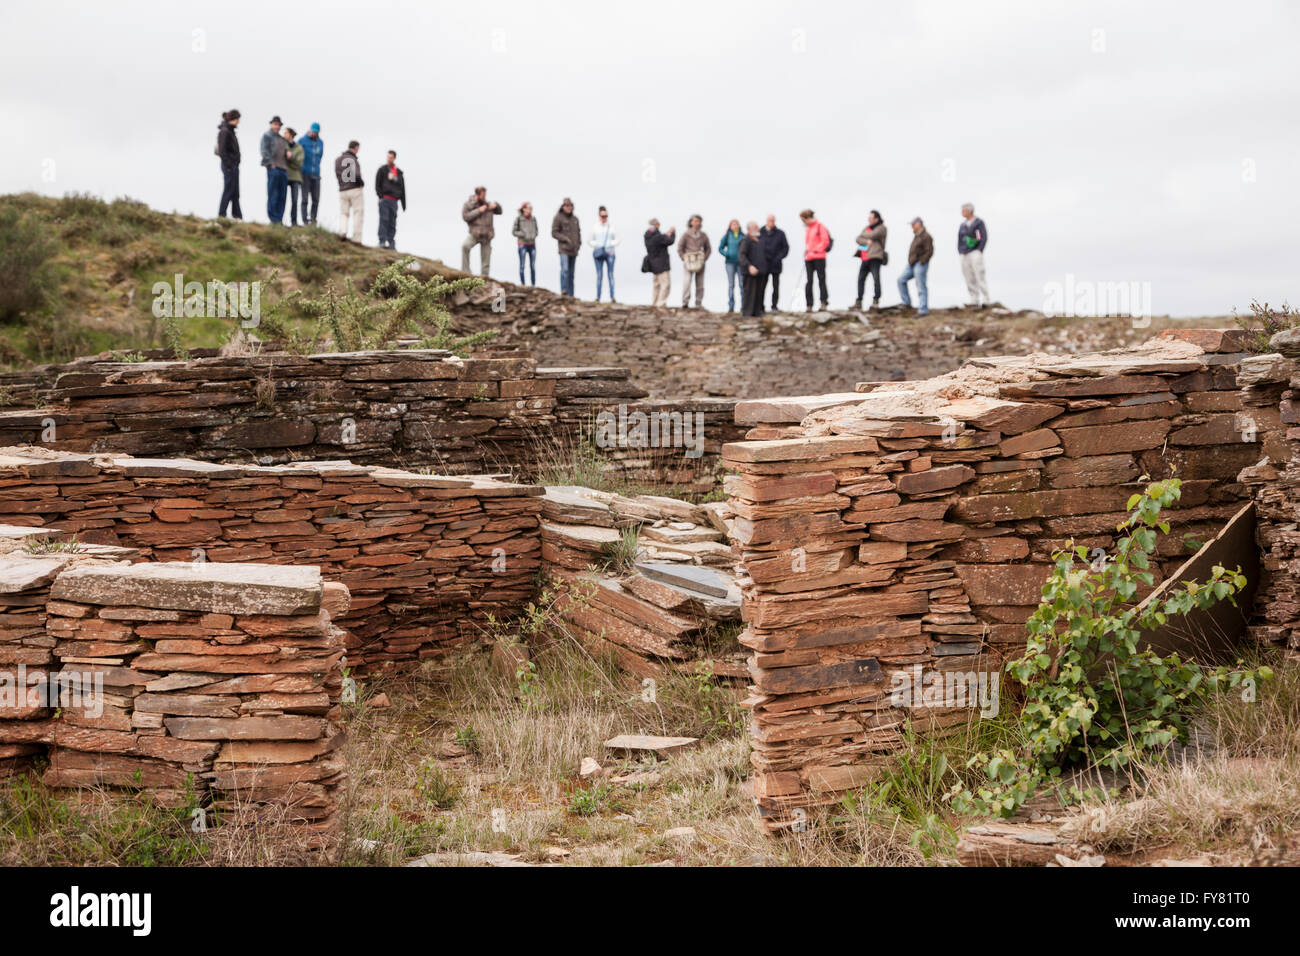 Eine Gruppe von Menschen, die Besichtigung der Ruinen einer prähistorischen menschlichen Siedlung (Castro) in Galizien, nördlich von Spanien Stockfoto